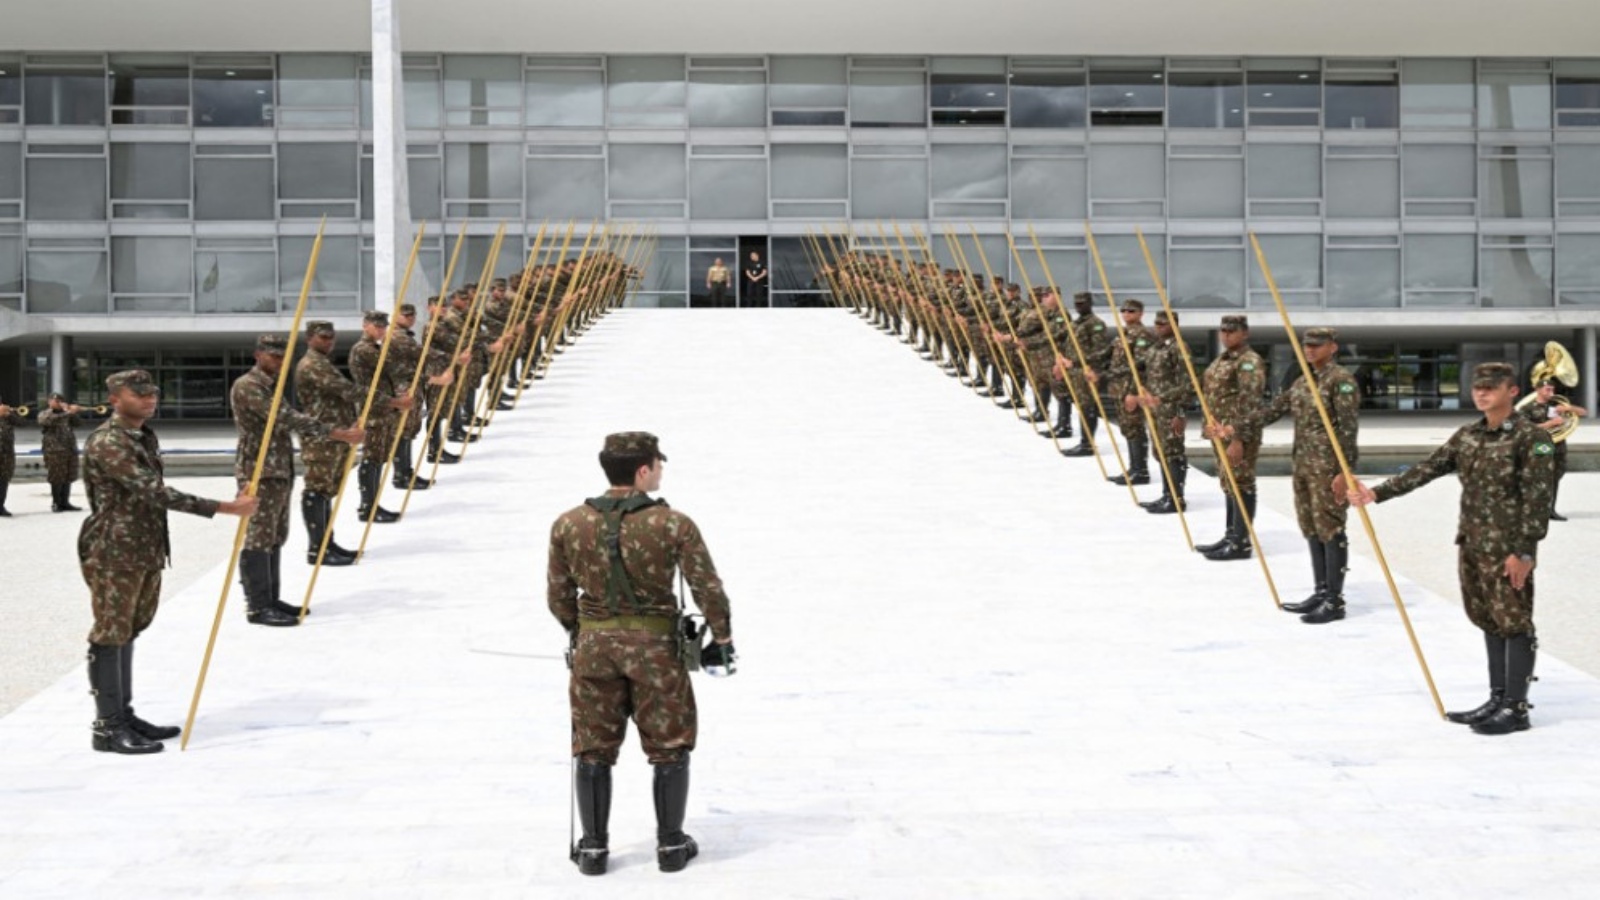 جنود من الجيش البرازيلي يستعدون لحفل تنصيب الرئيس البرازيلي المنتخب لويس إيناسيو لولا دا سيلفا في قصر بلانالتو في برازيليا، 27 ديسمبر 2022